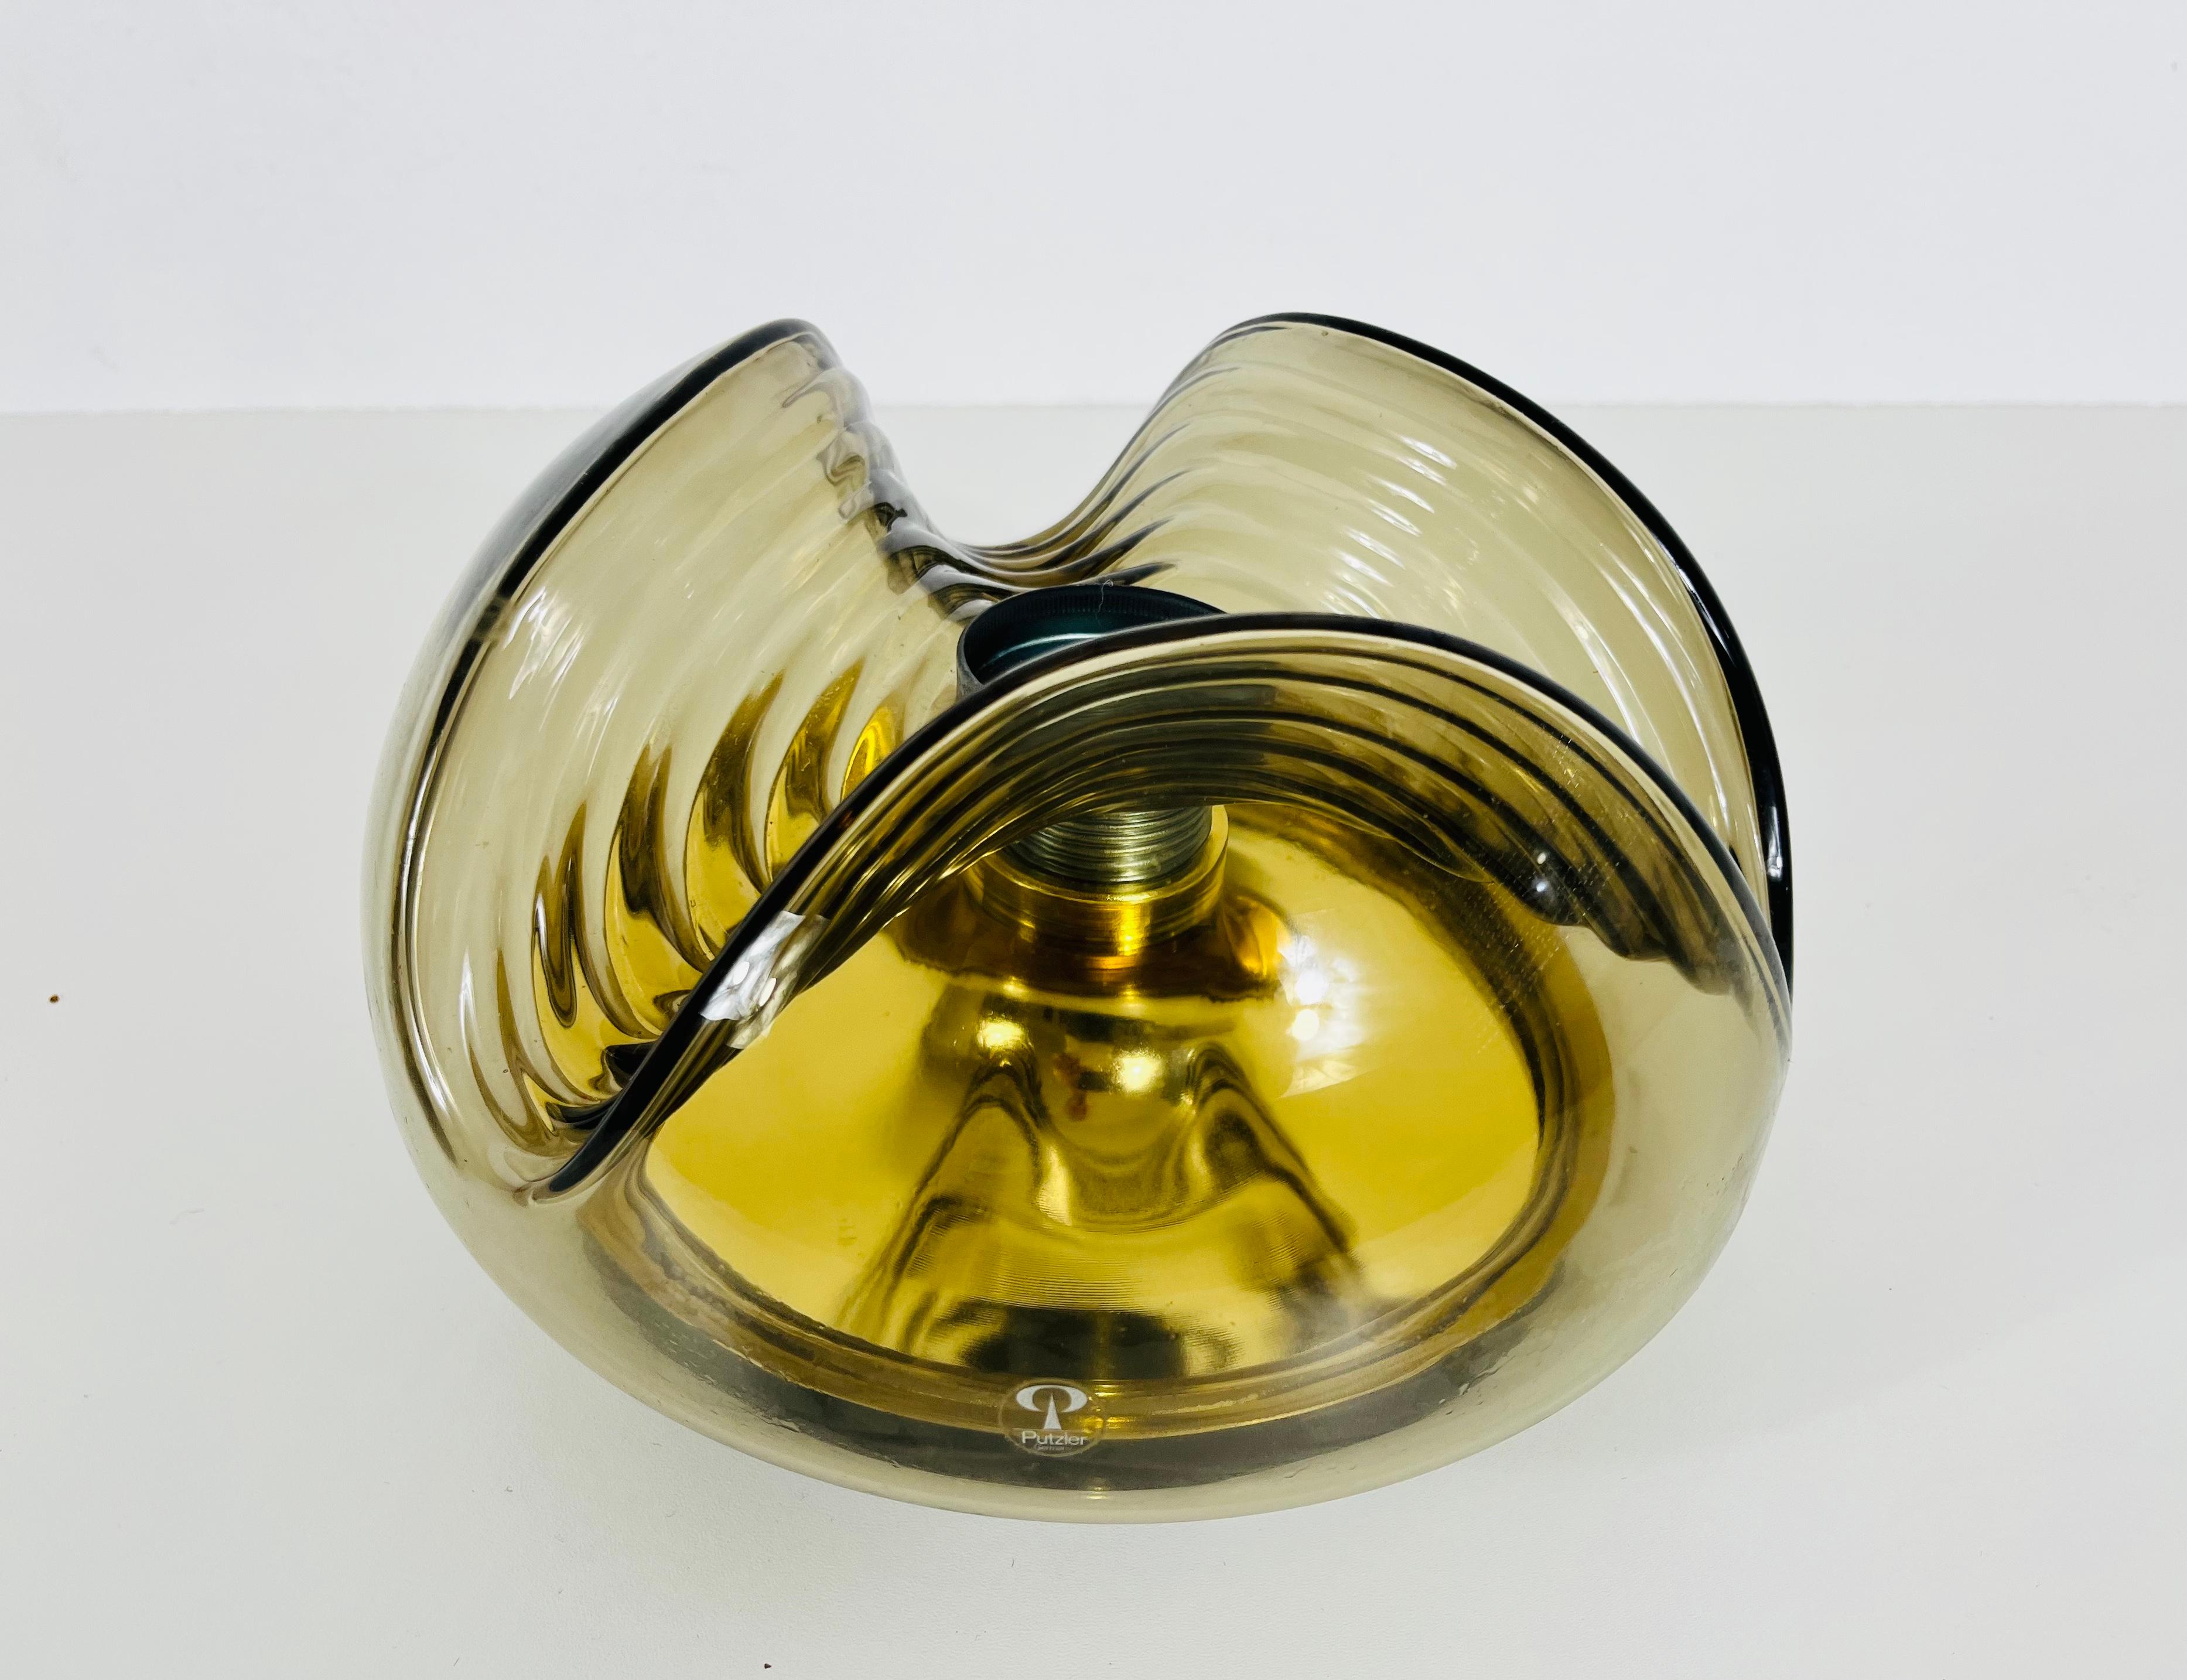 Une monture ronde encastrée par Koch & Lowy pour Peill and Putzler, fabriquée en Allemagne dans les années 1960. Il est fascinant avec son beau verre ambré. La lampe a un design de l'ère spatiale.

Très bon état vintage. Fonctionne avec les deux